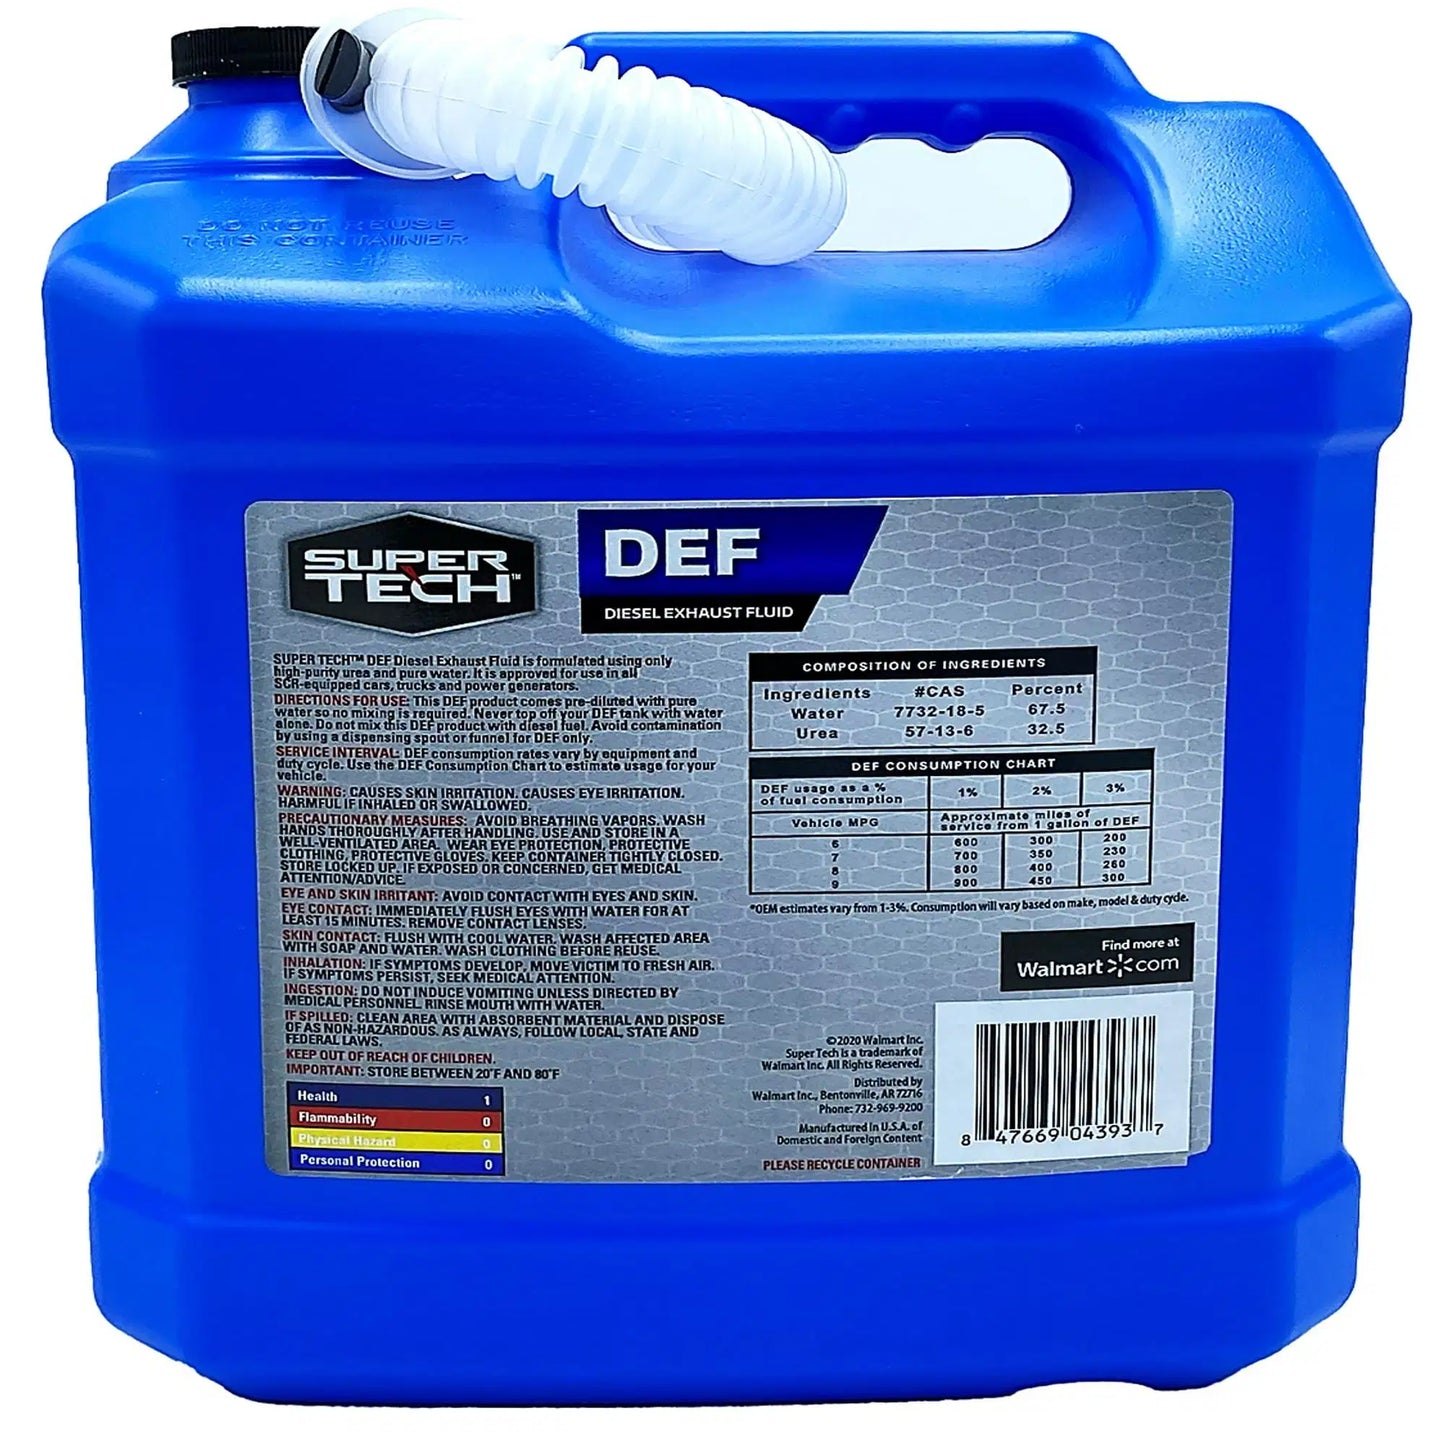 Super Tech DEF Diesel Exhaust Fluid 2.5 Gallon